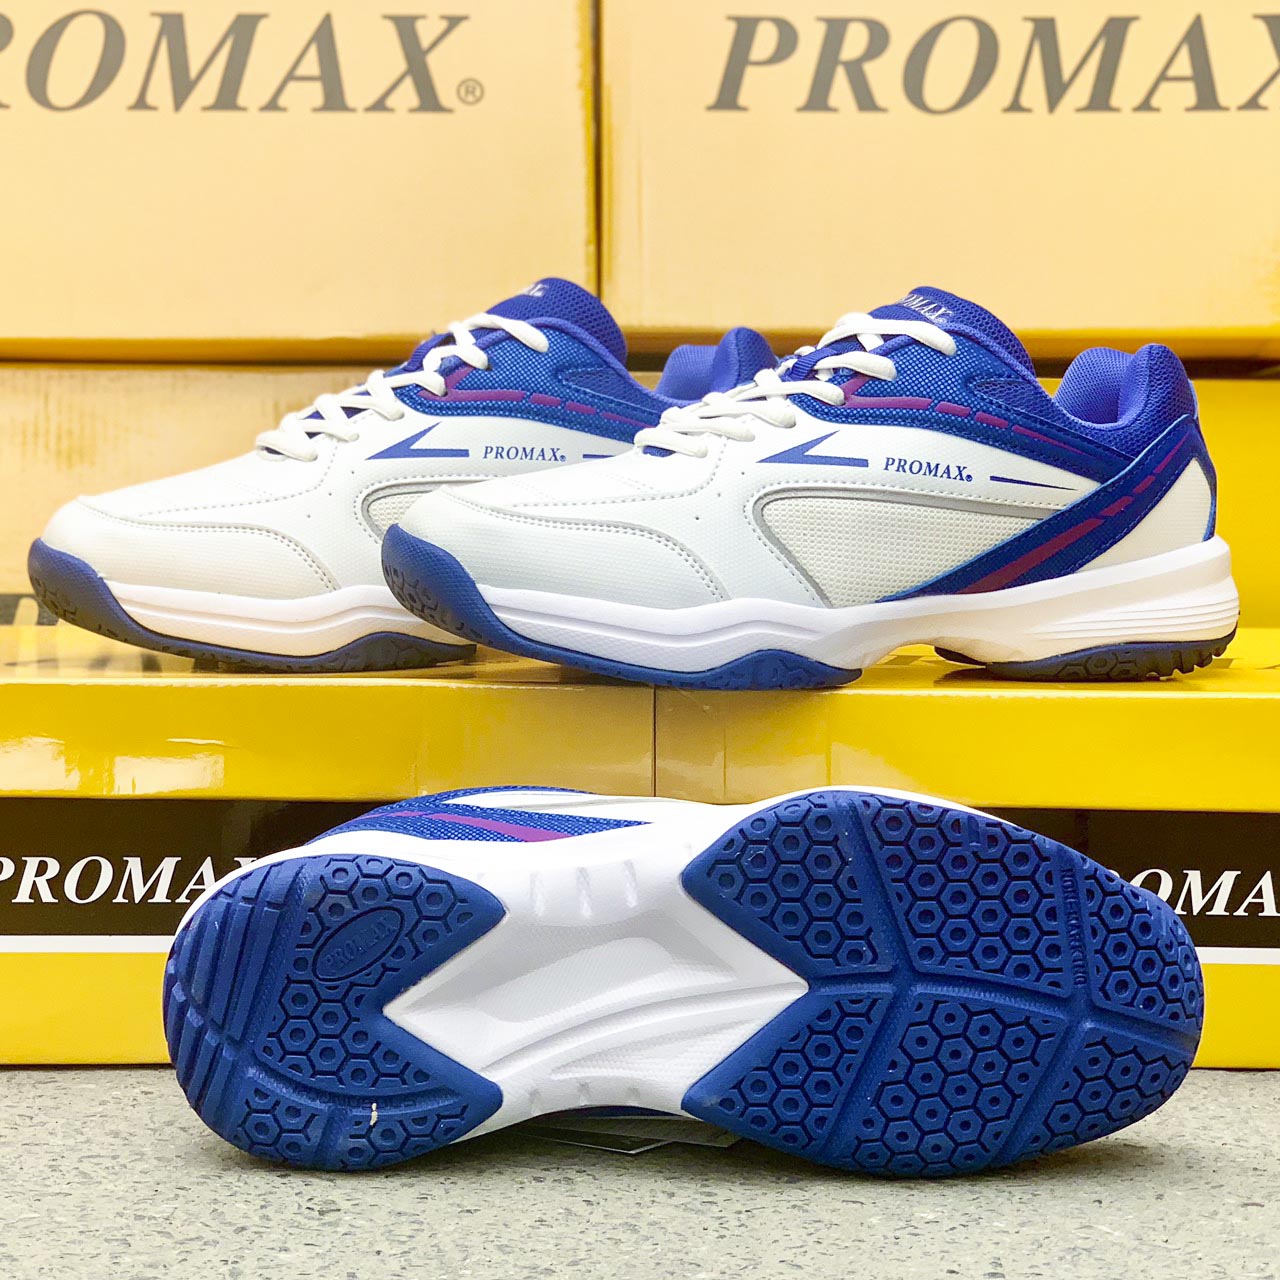 Giày cầu lông Promax nam nữ chính hãng 19002 nhiều màu